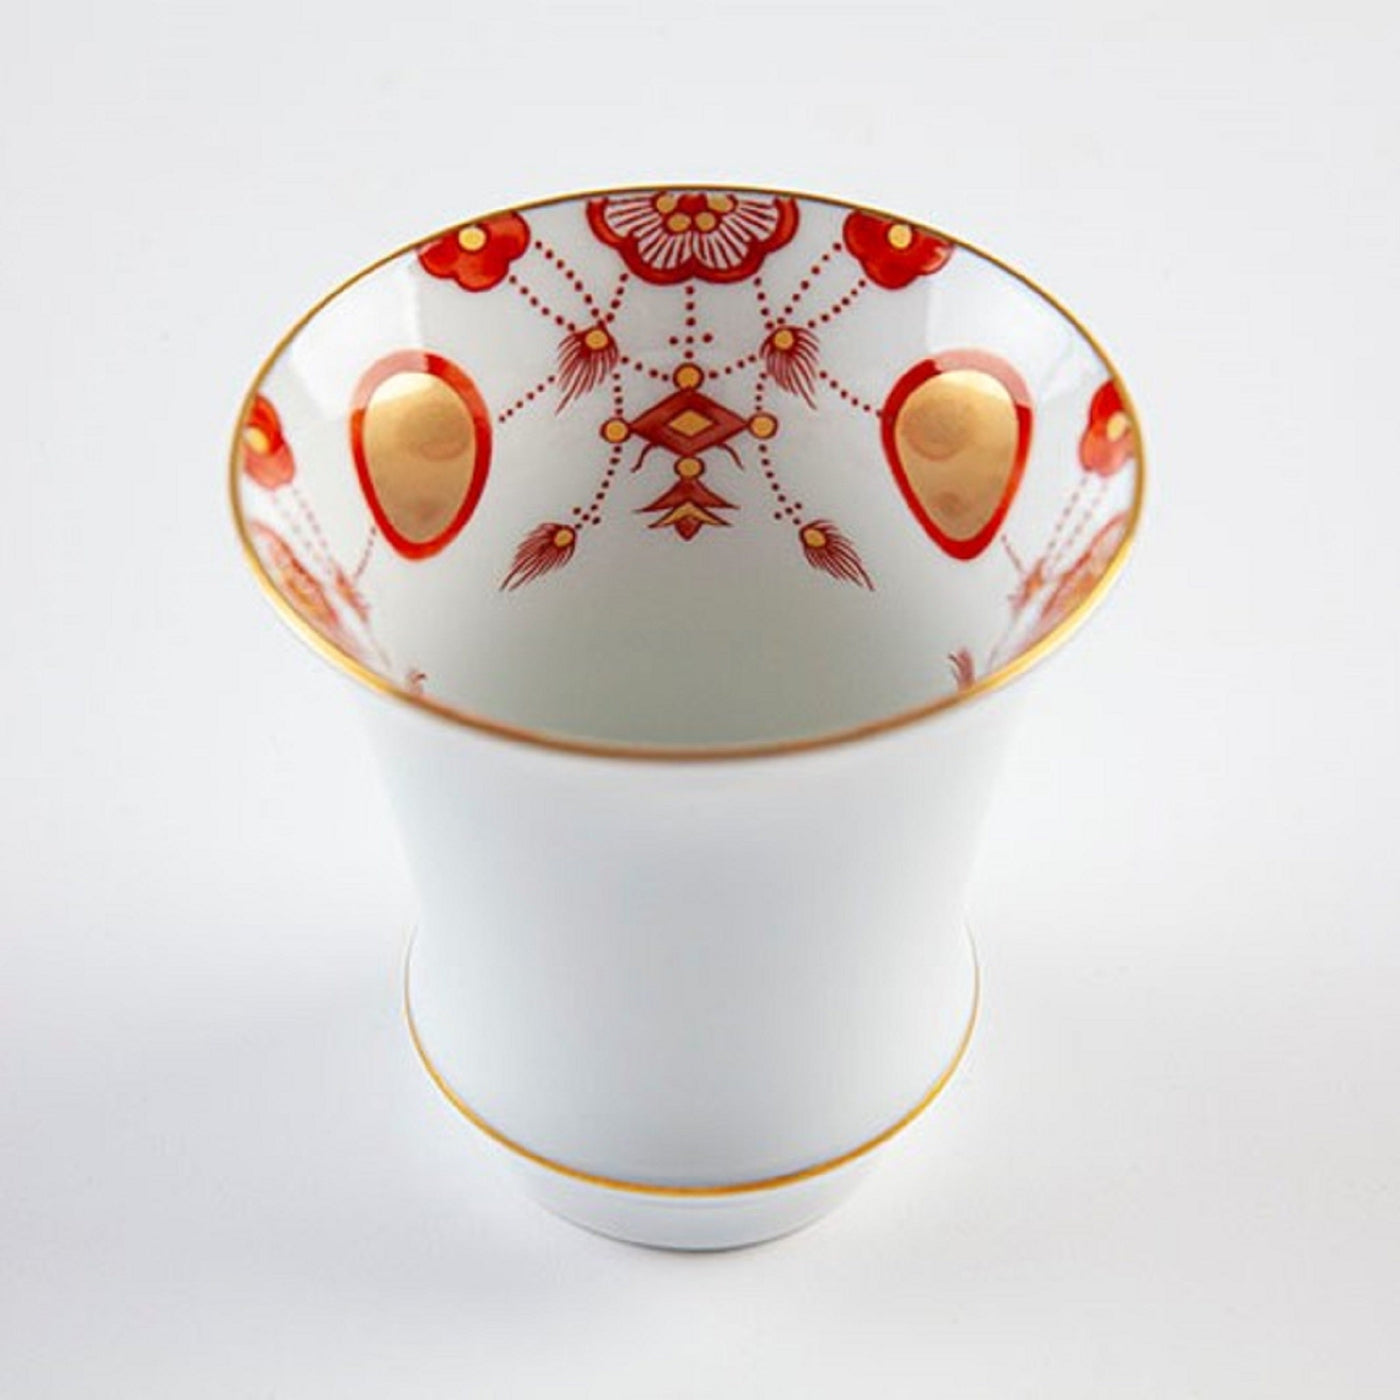 A pair of Sake glass (rim curving outward), Yoraku pattern (red)